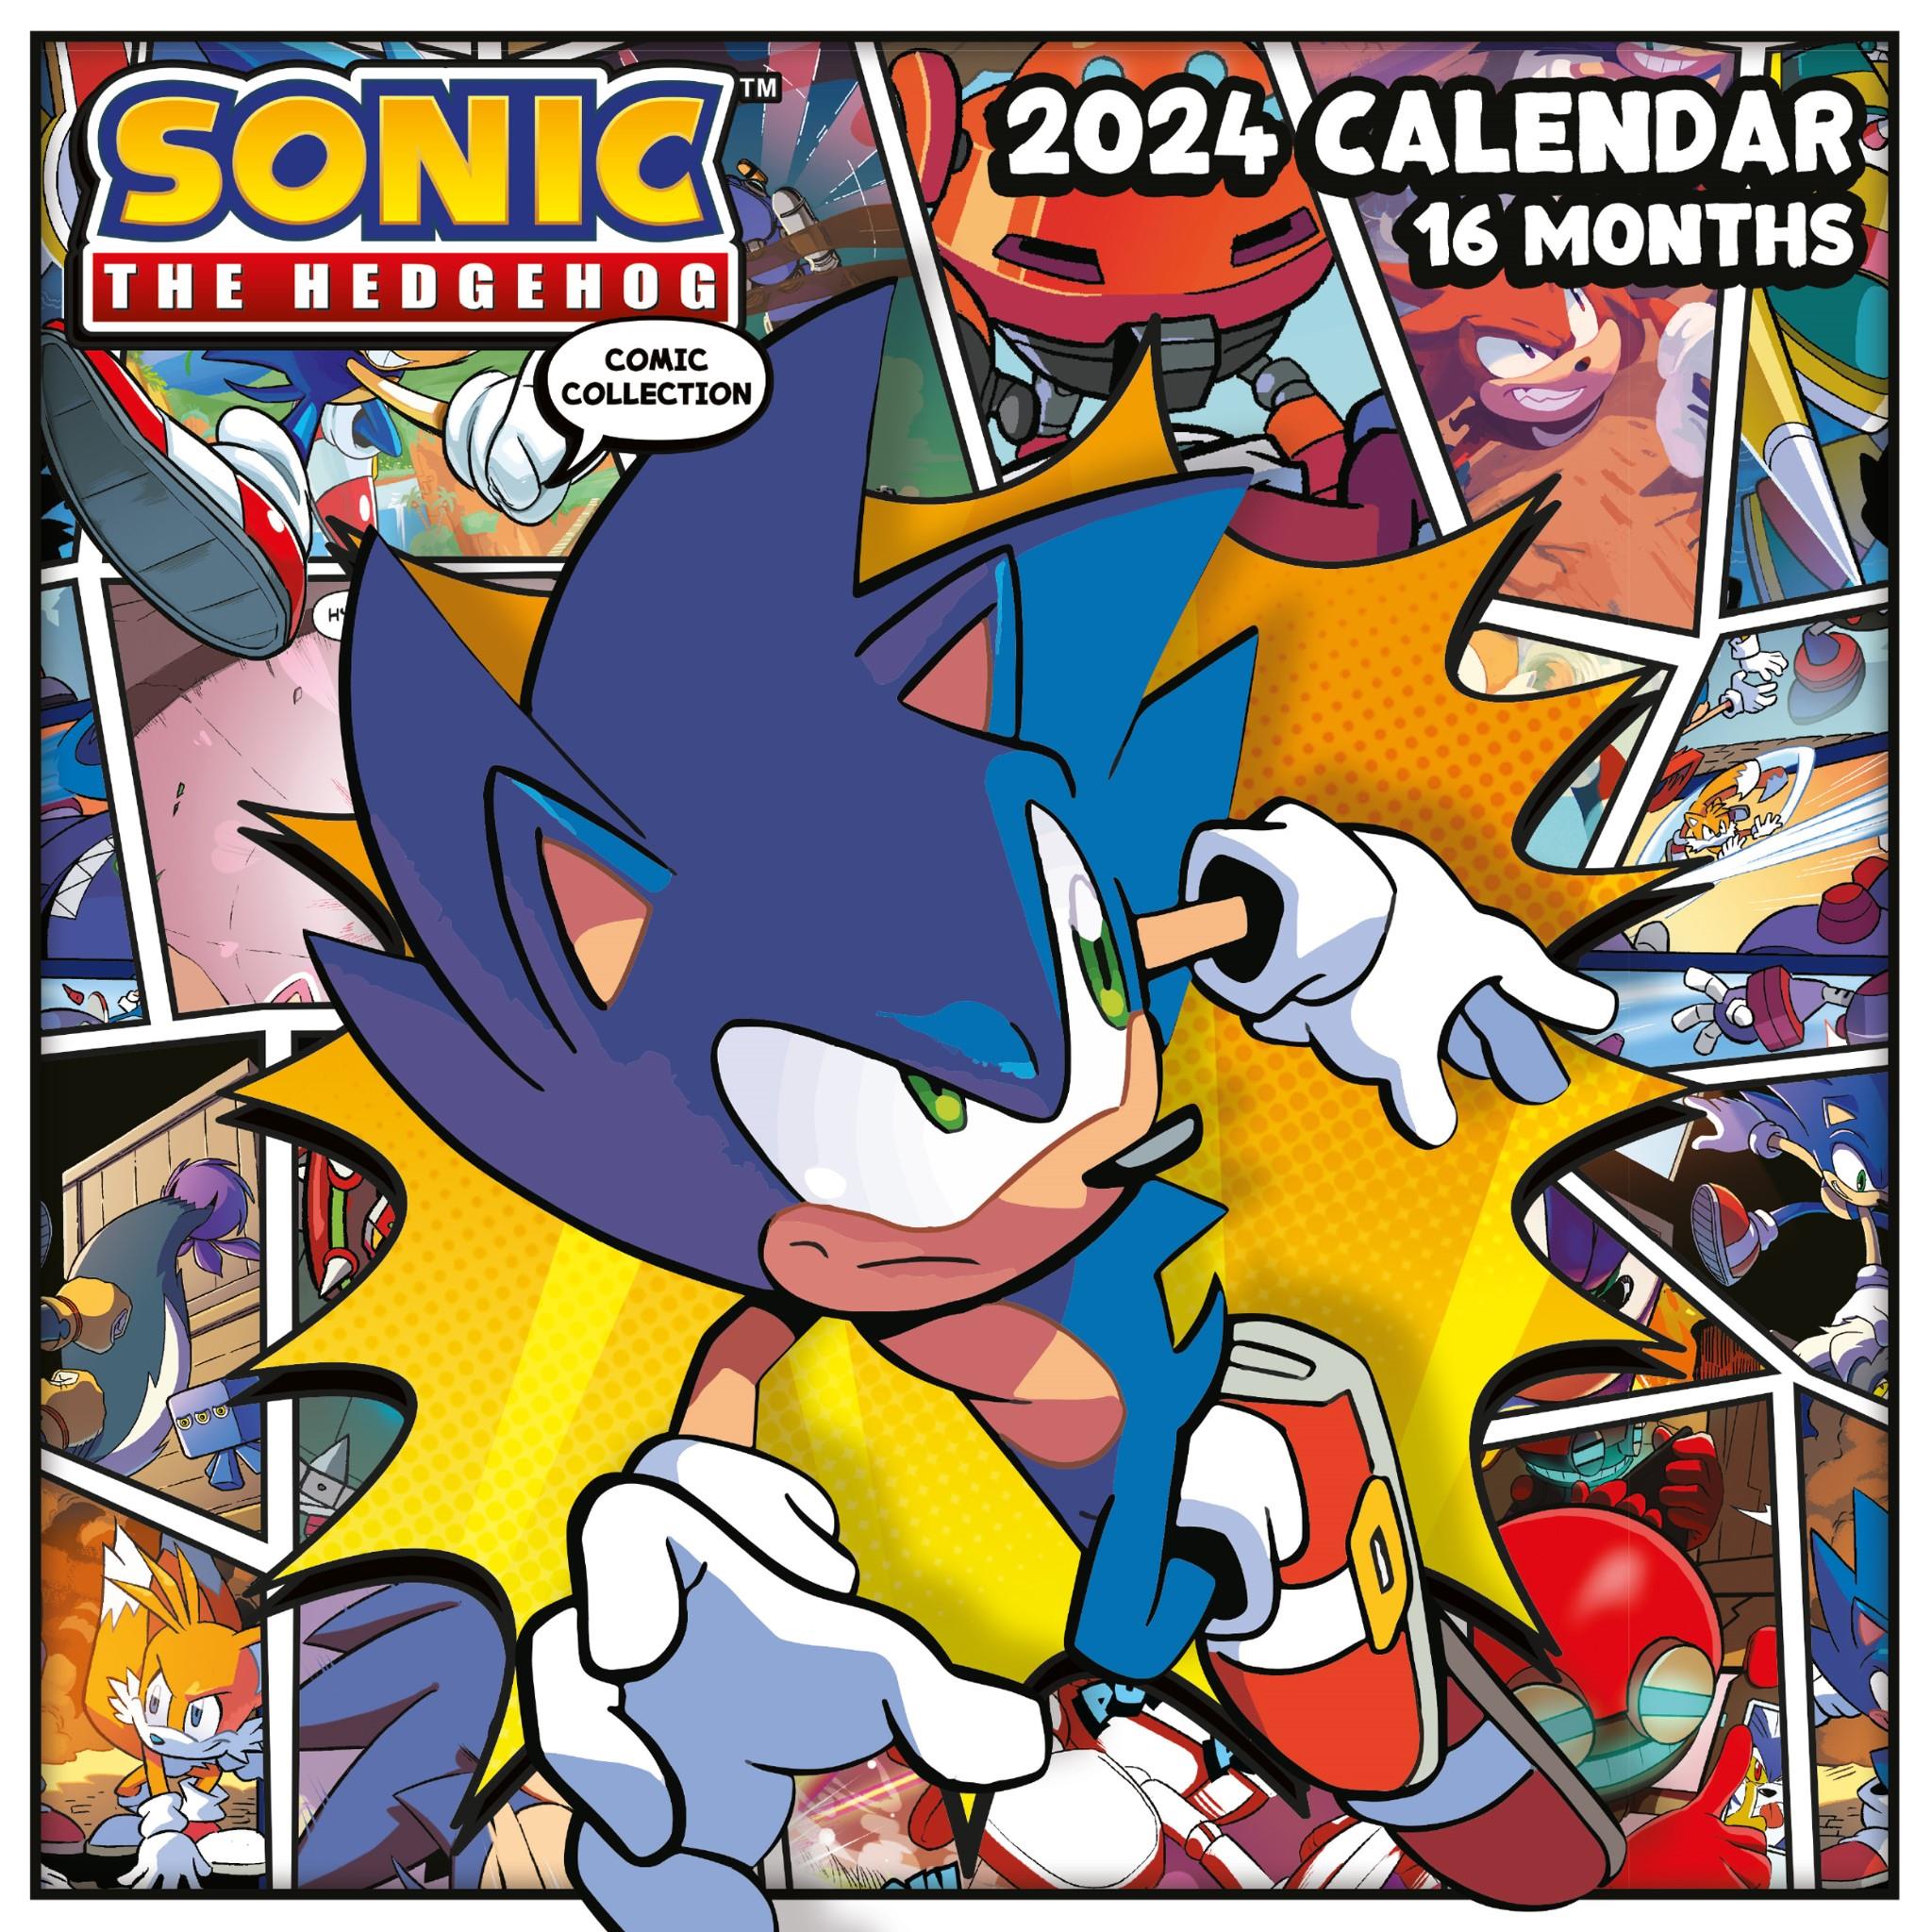 sonic the hedgehog - 2024 calendar